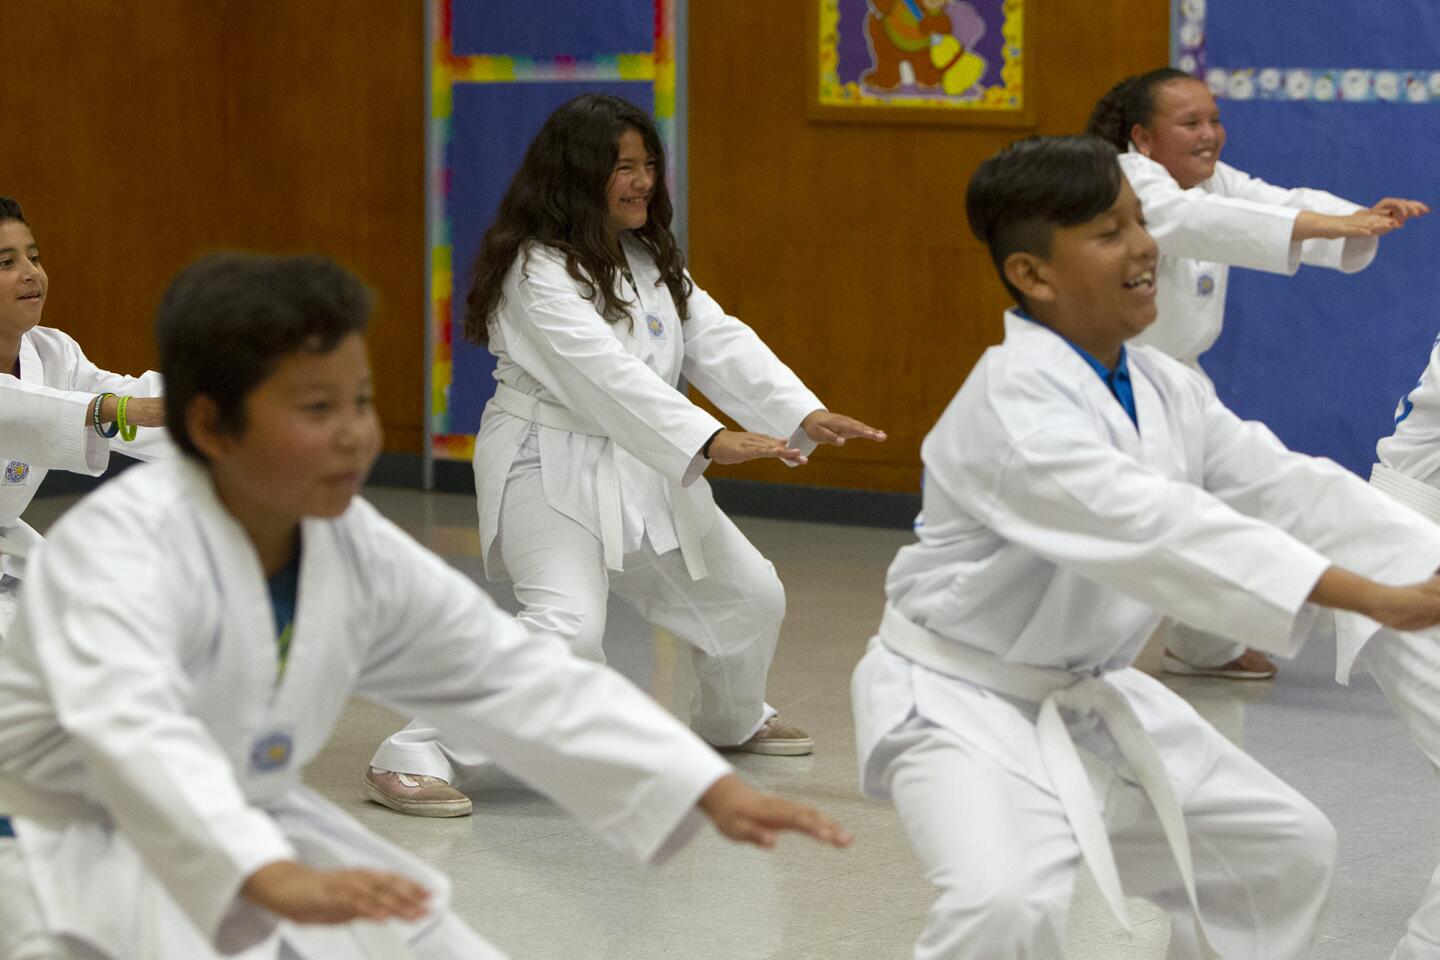 New taekwondo summer camp kicks its way into Costa Mesa